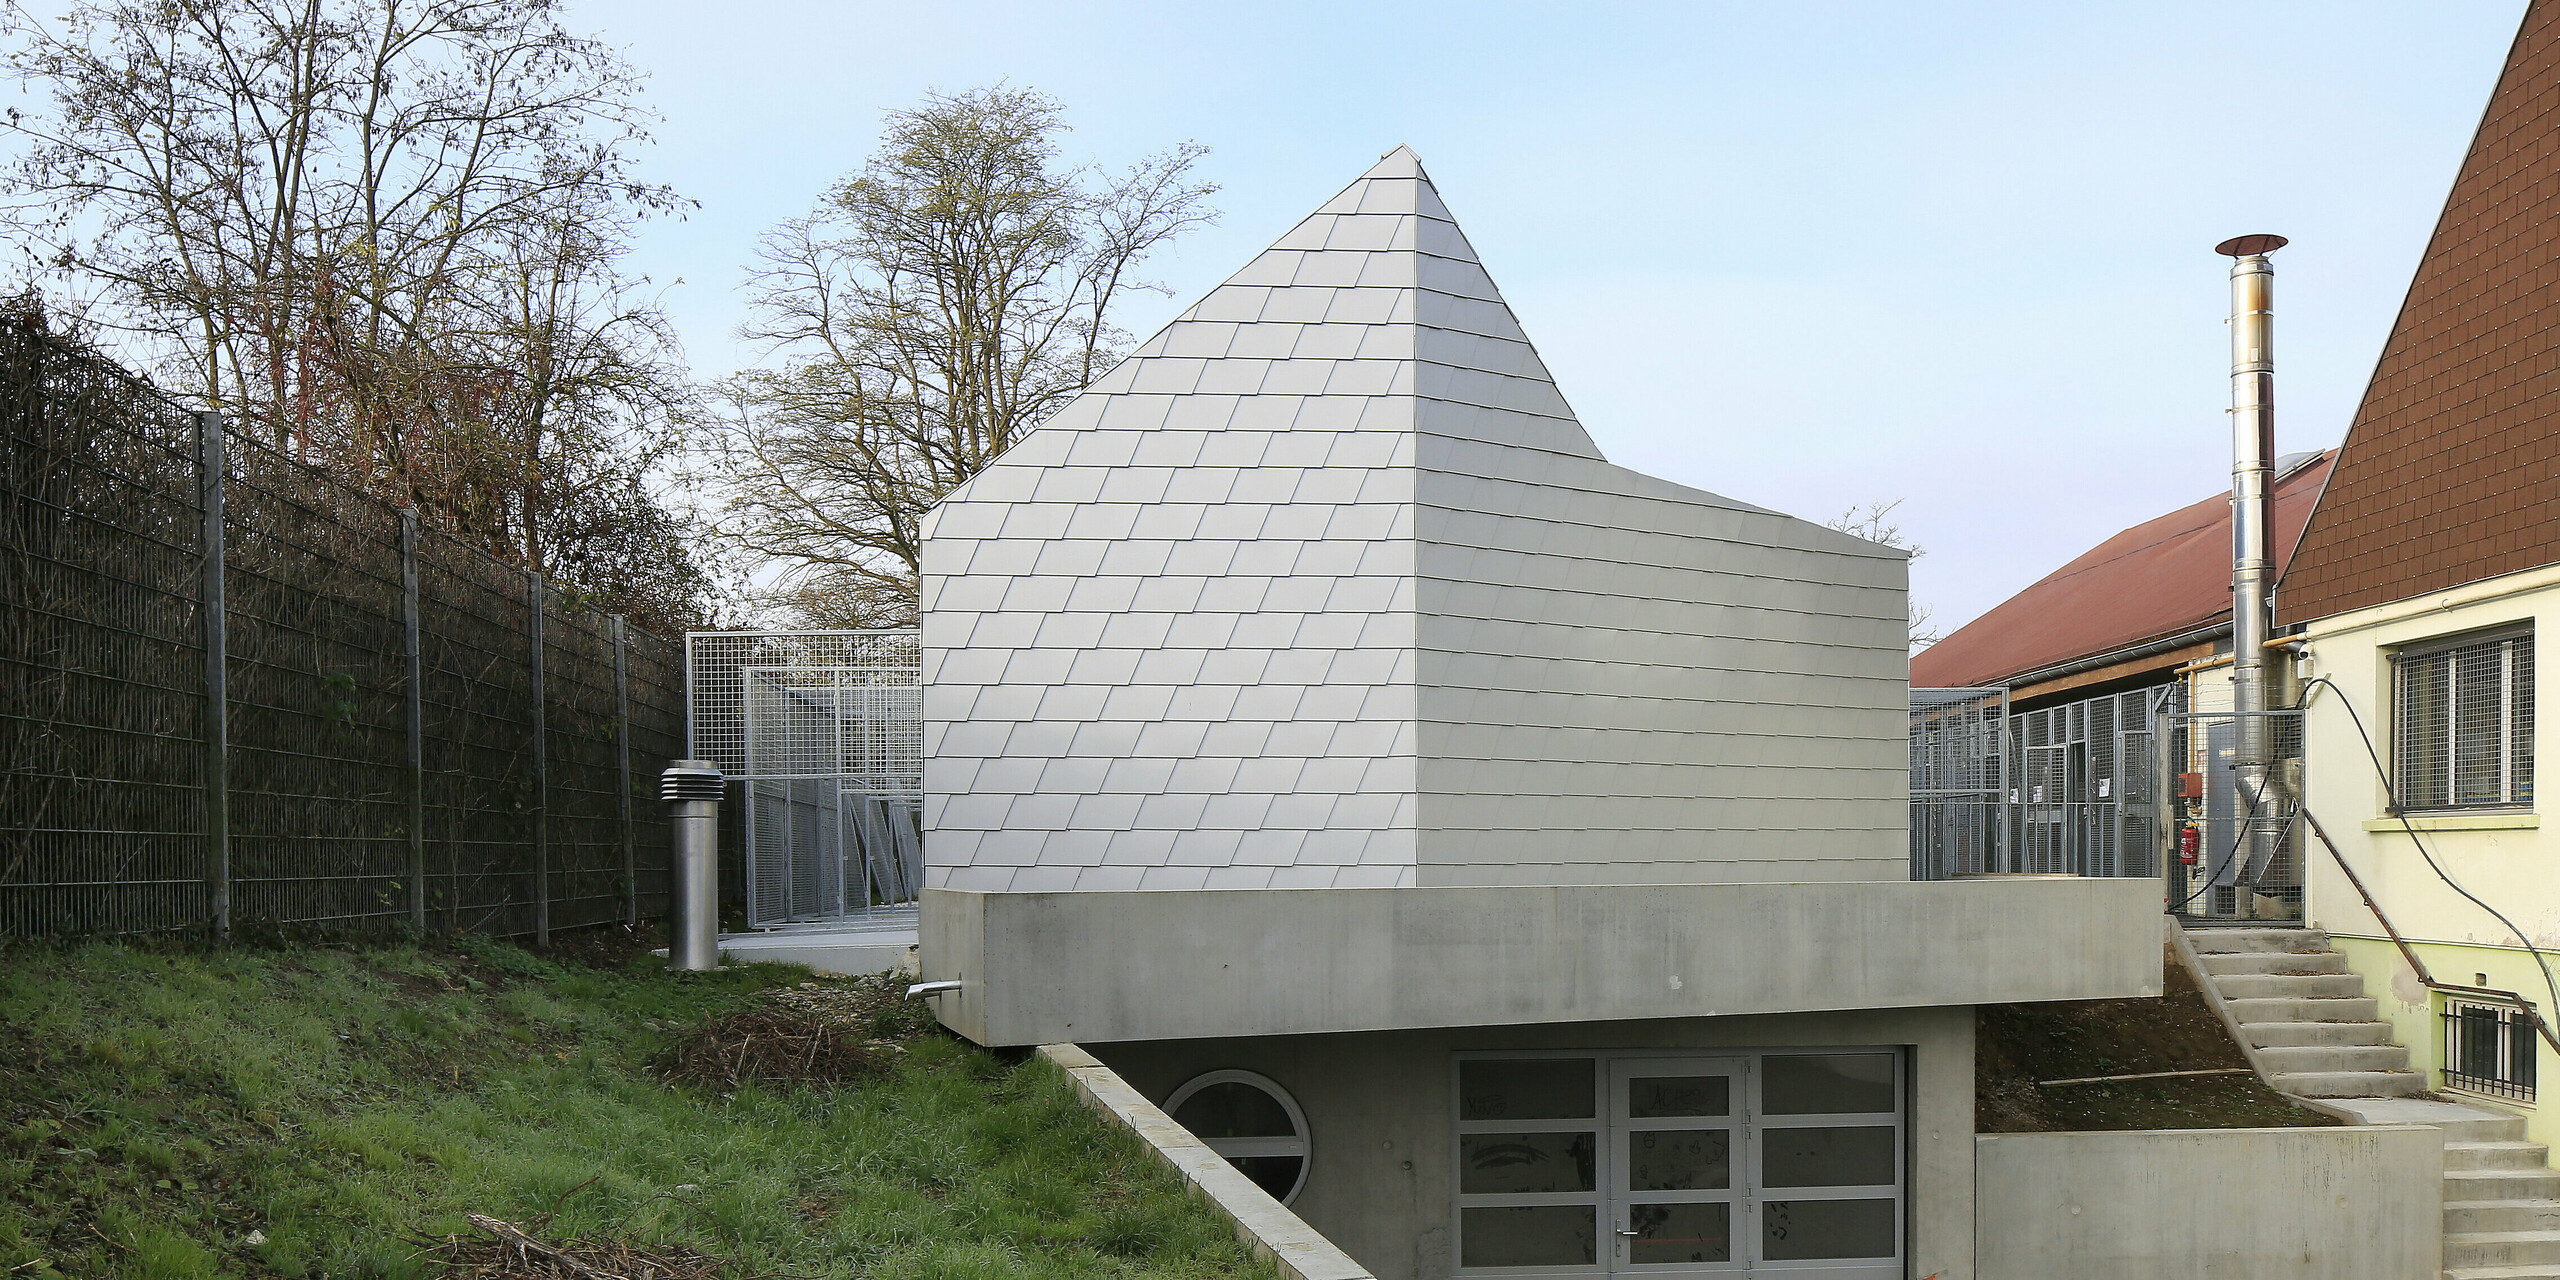 Accès à l'association de protection des animaux de Mullhouse avec une coque de bâtiment attrayante en bardeaux de toiture et de façade PREFA en argent métallisé